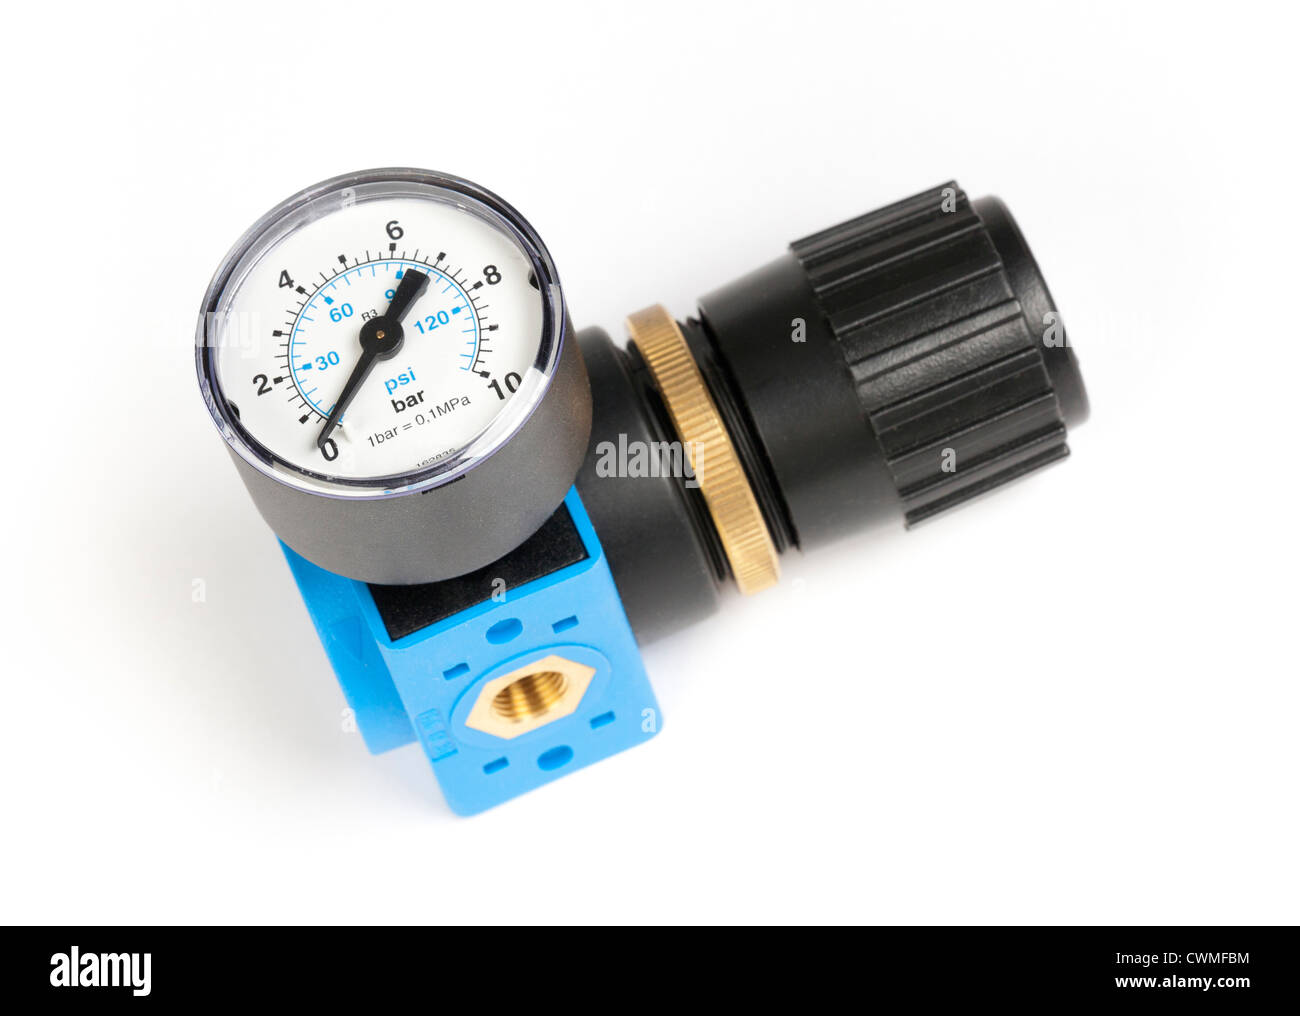 air pressure regulator and gauge Stock Photo